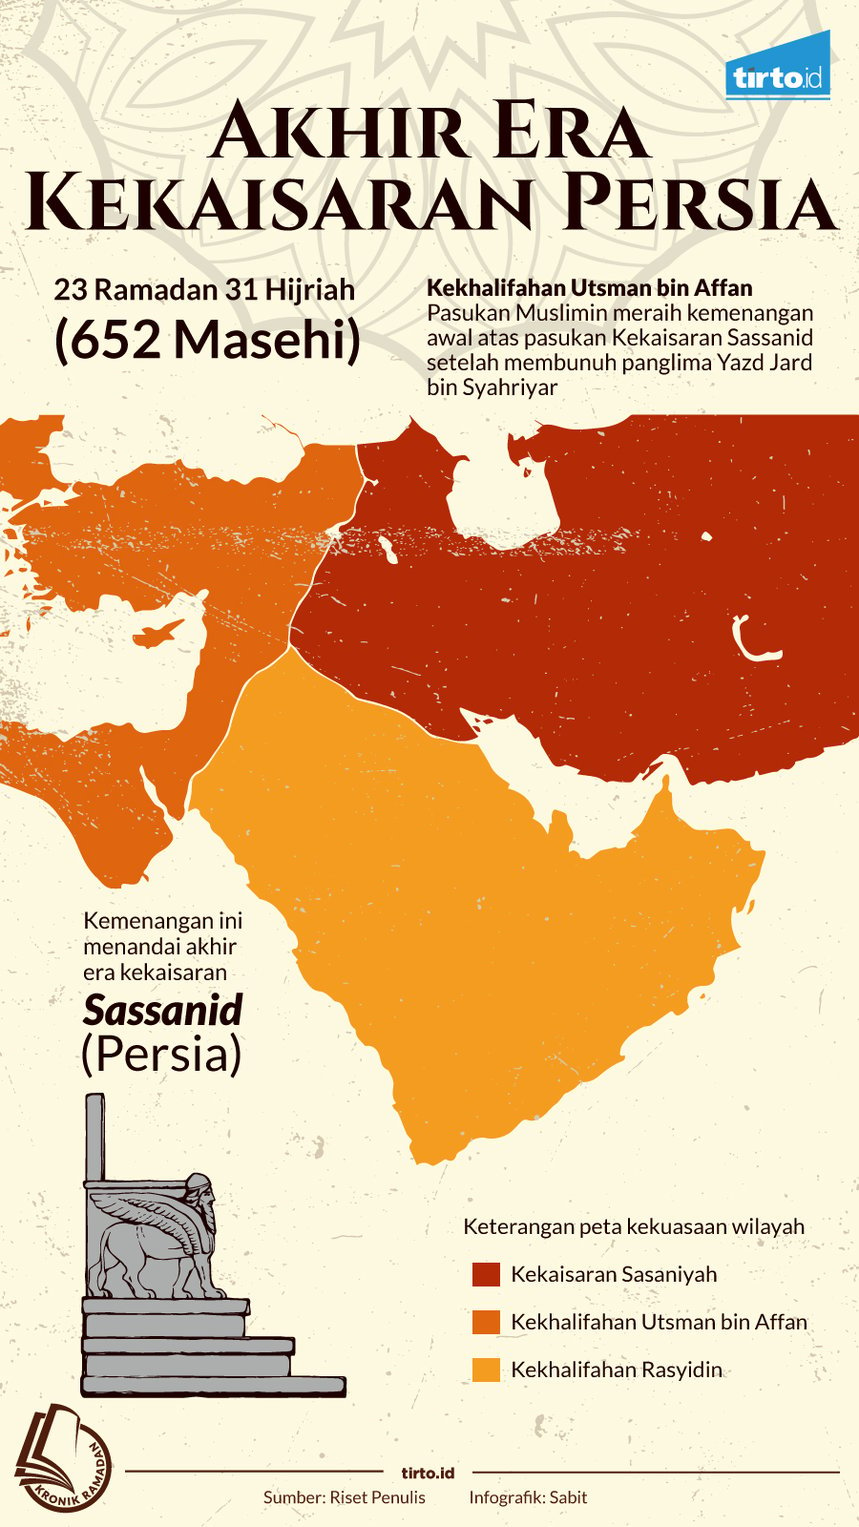 Infografik Kronik Ramadan Akhir Era Kekaisaran Persia